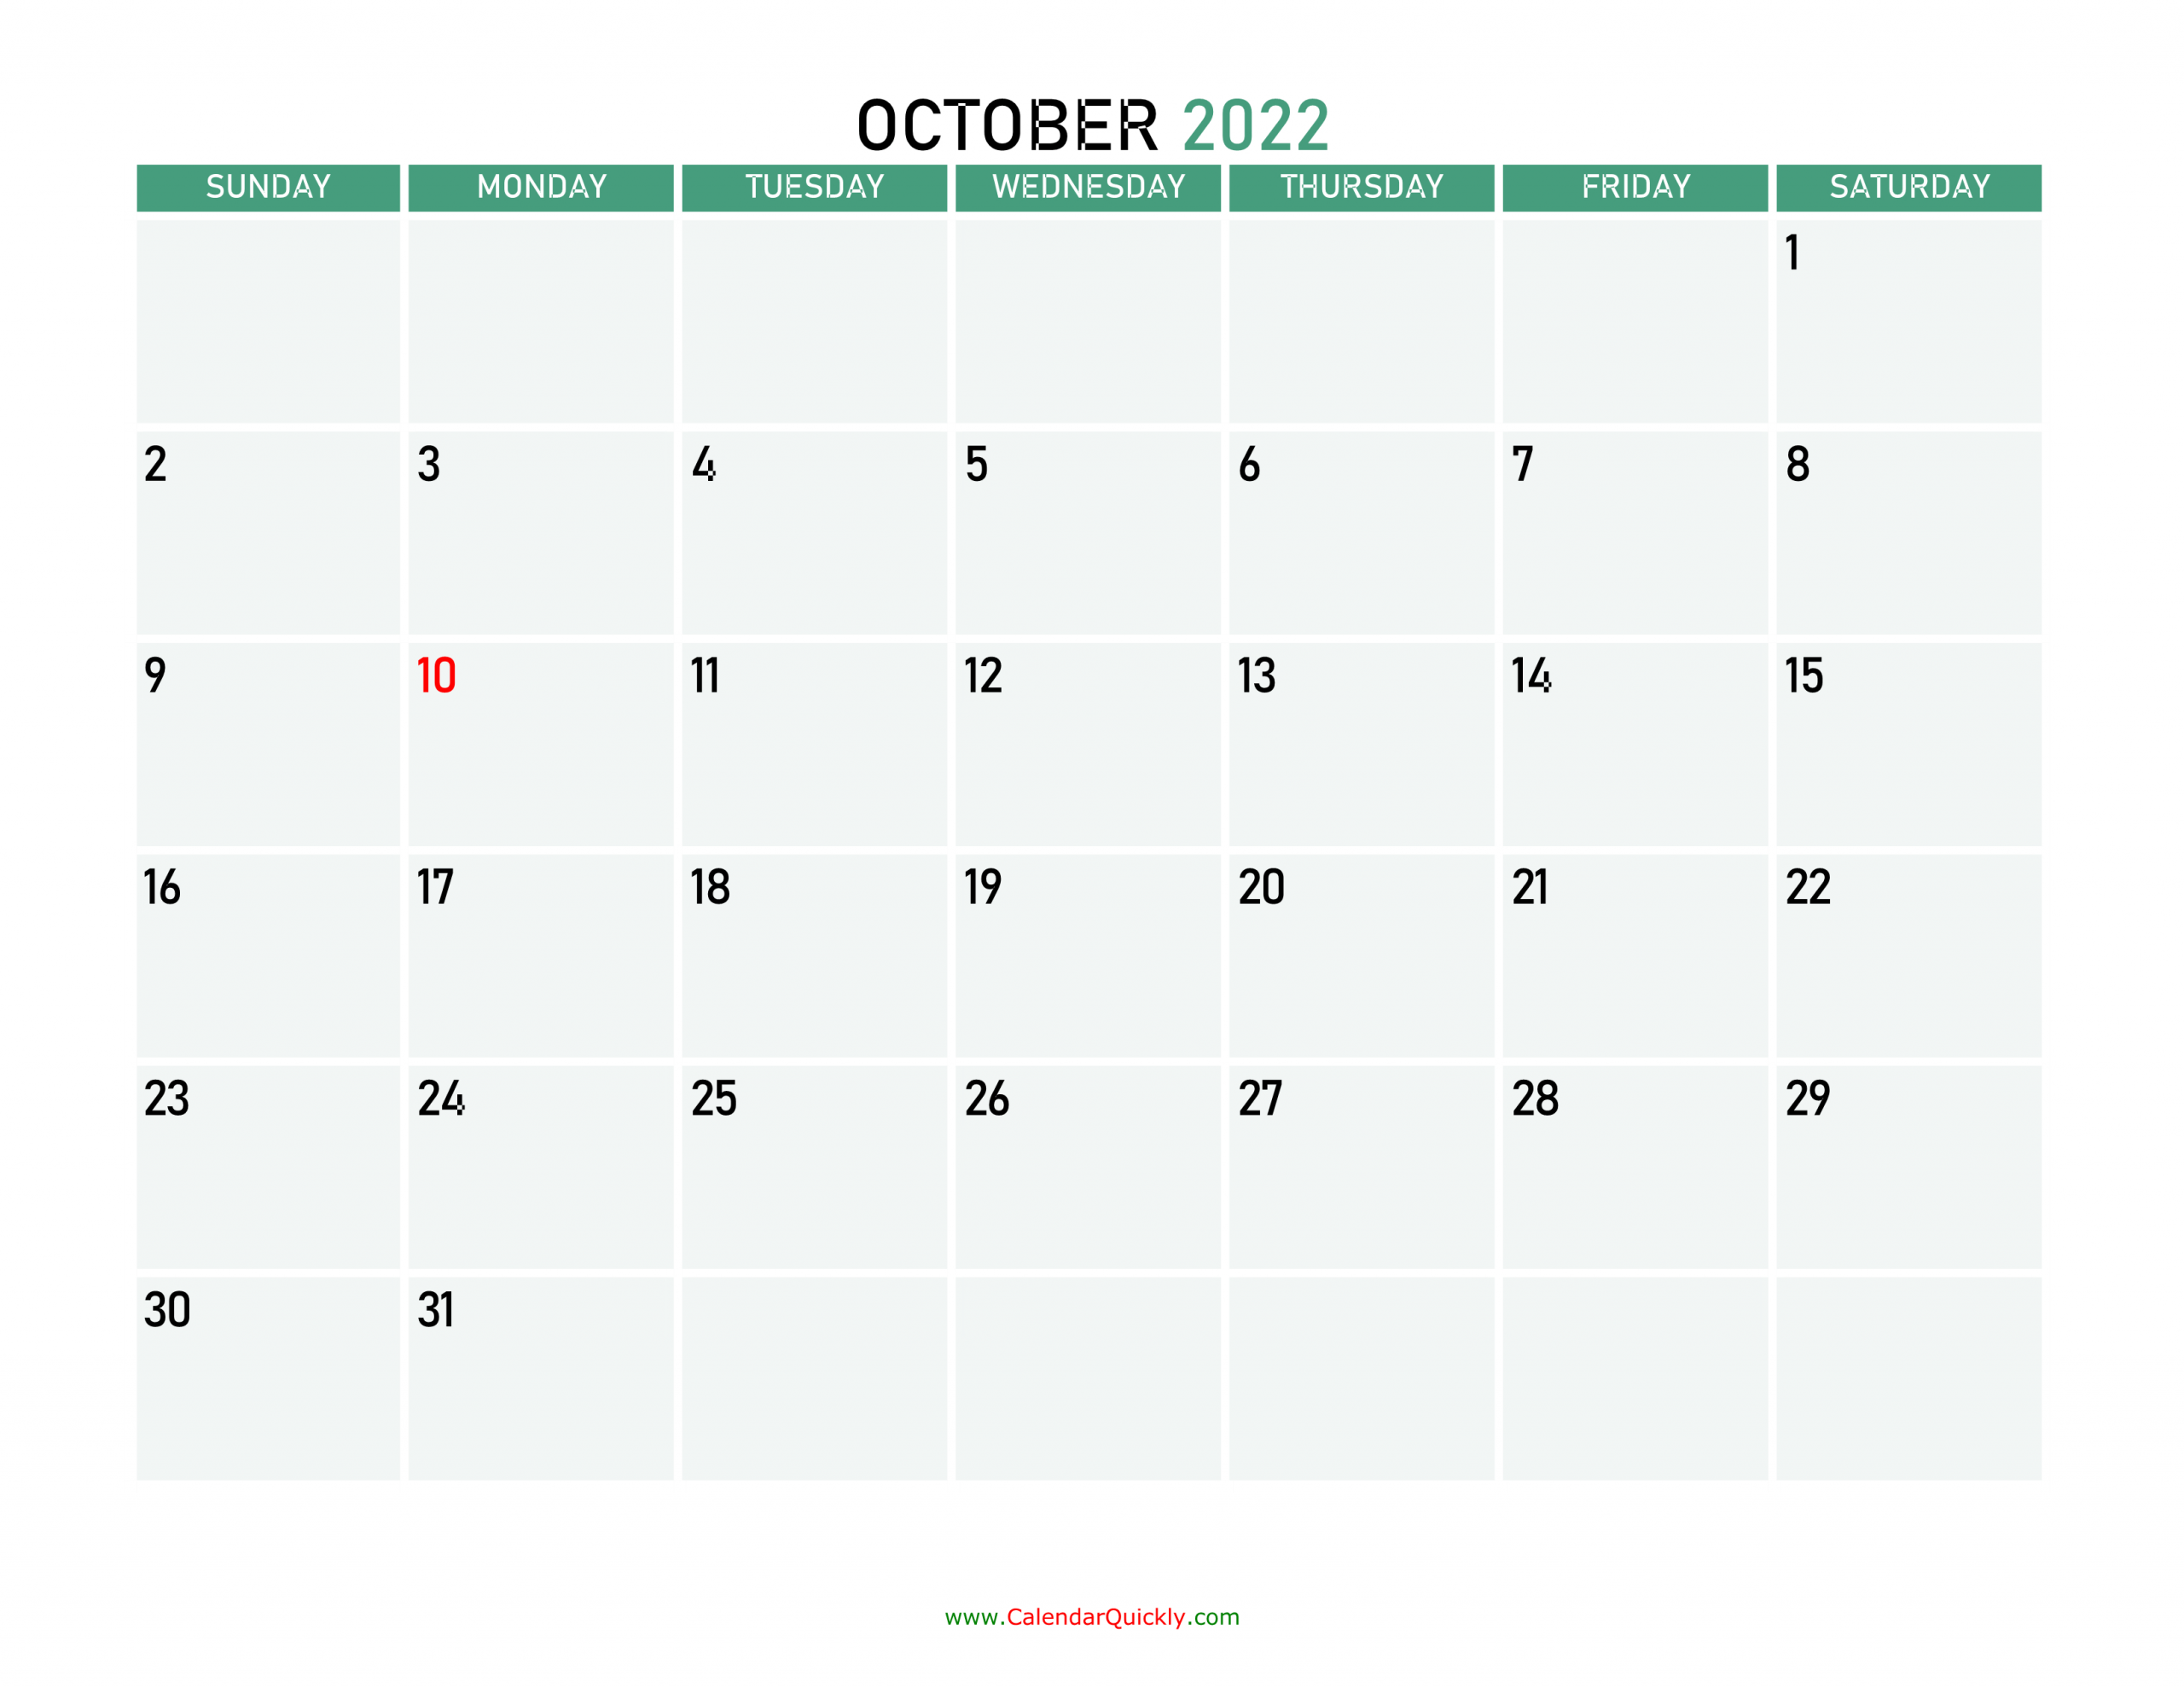 October 2022 Calendars | Calendar Quickly